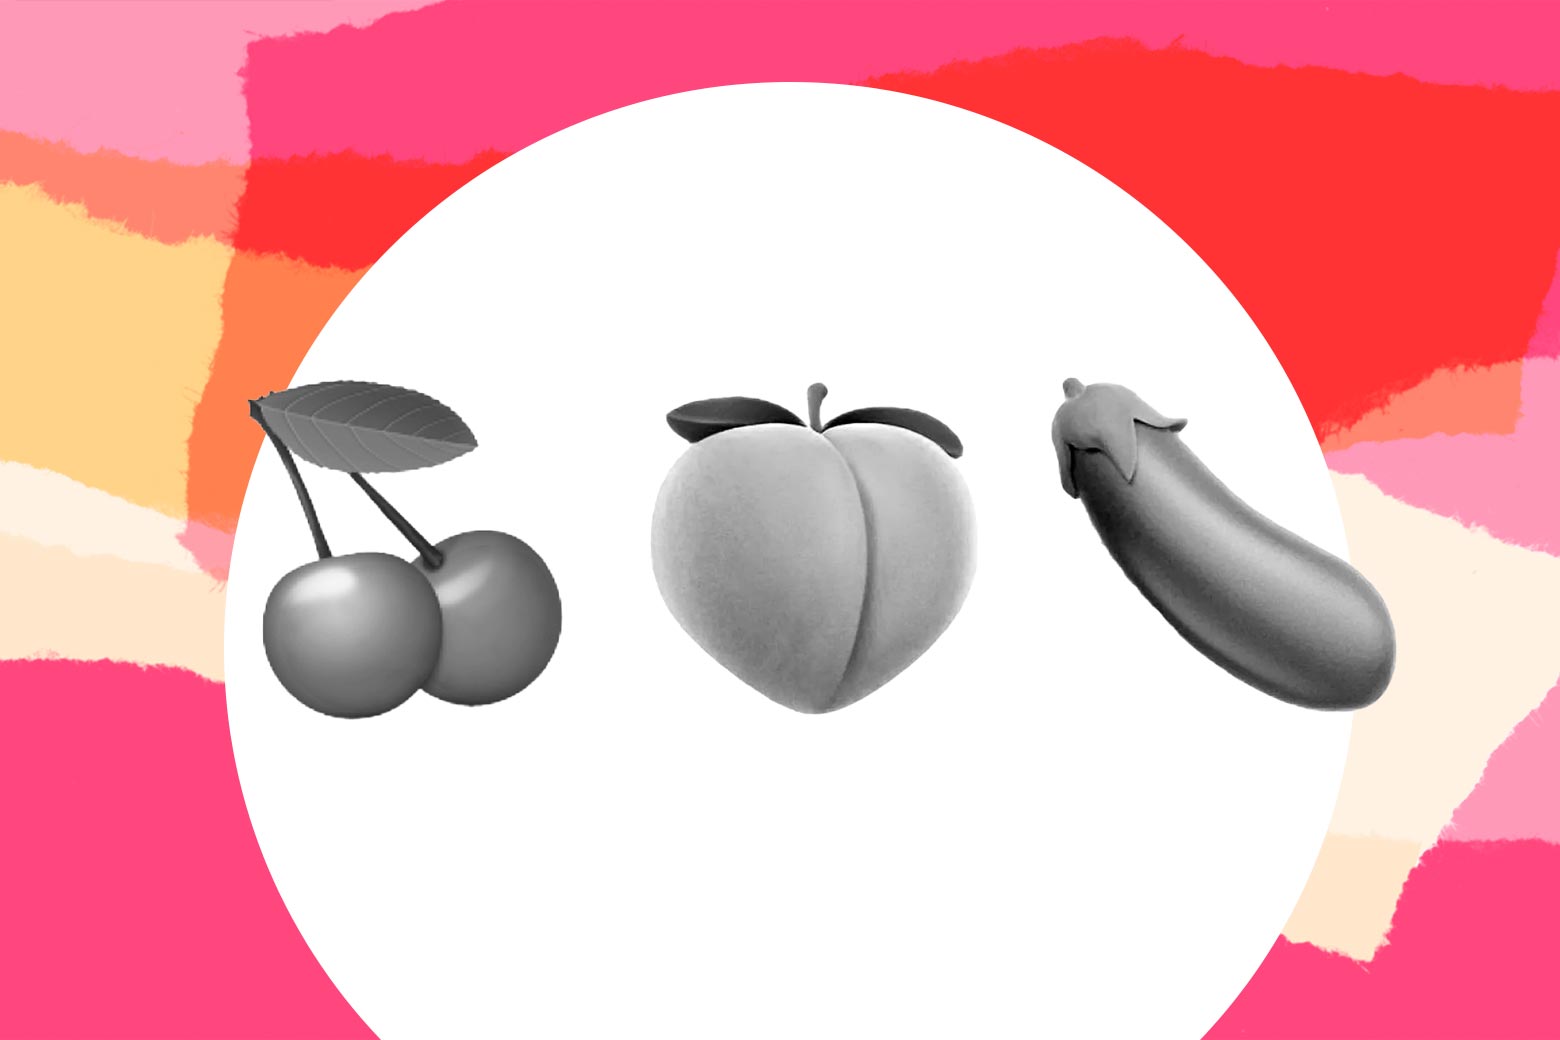 Emoji of cherries, a peach, and an eggplant.